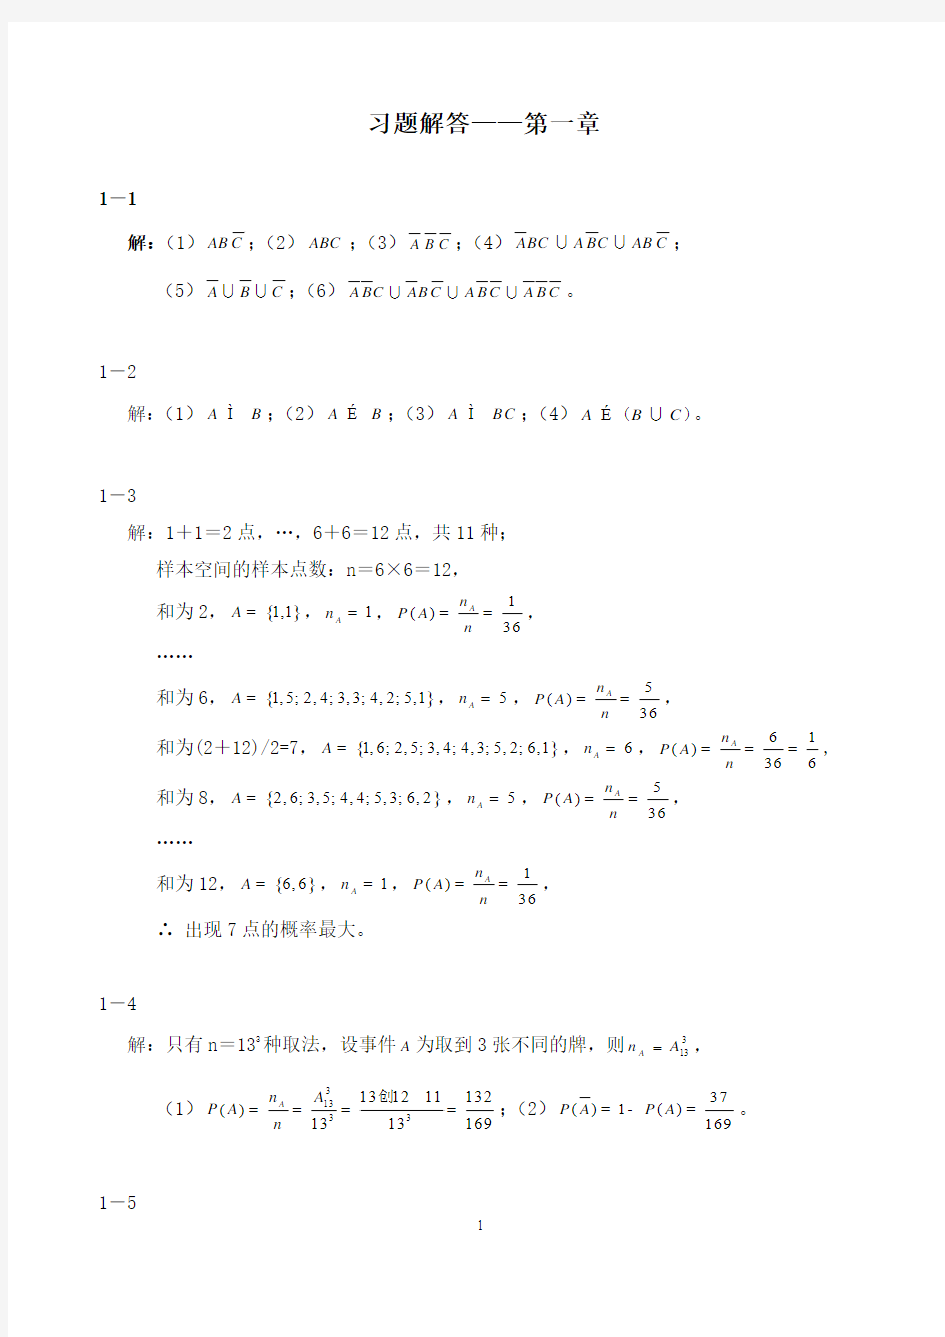 概率论与数理统计(第二版-刘建亚)习题解答